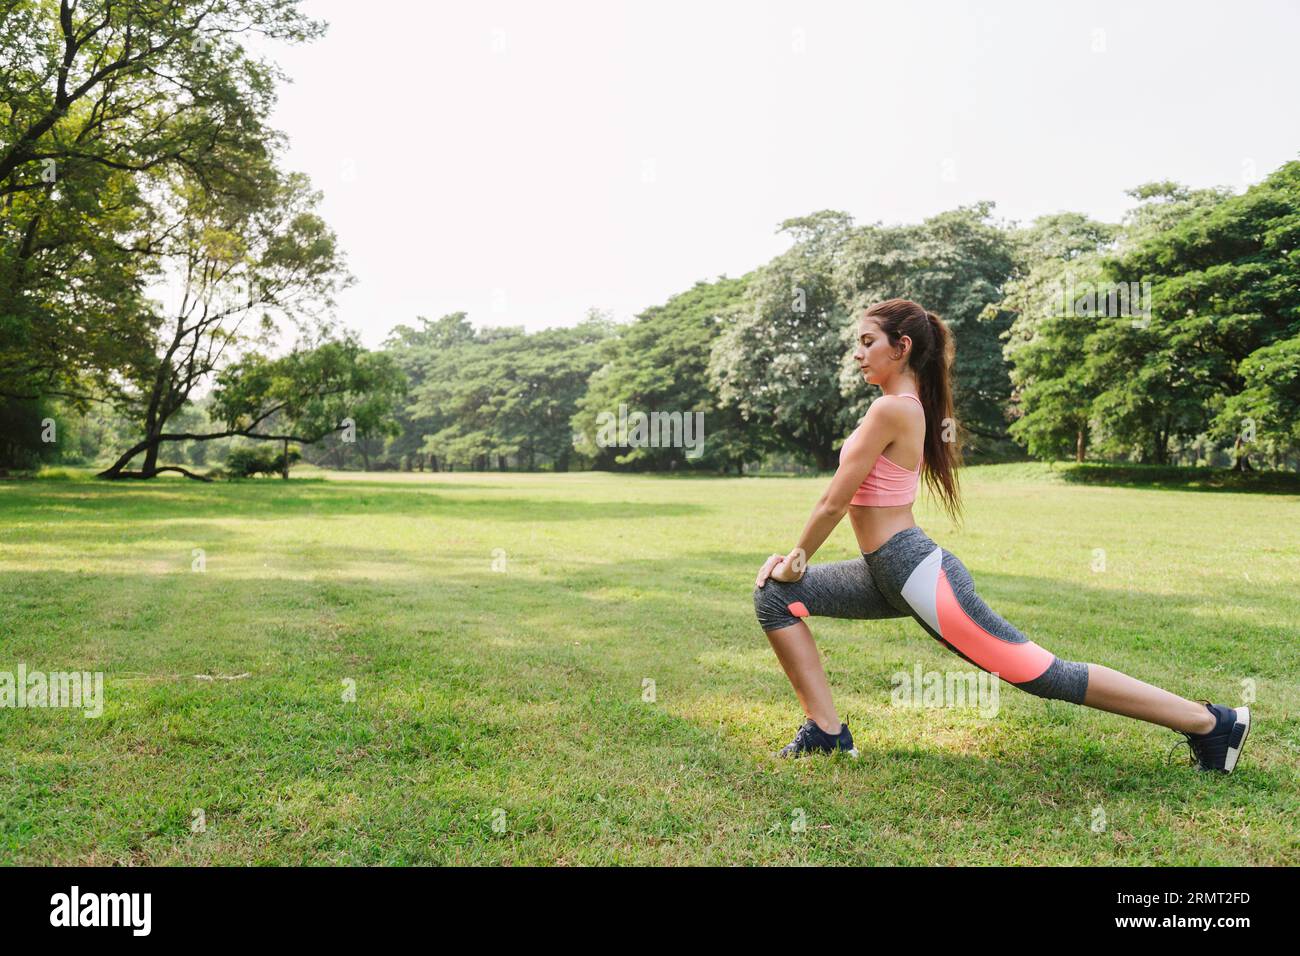 Sportfrauen trainieren und dehnen die Beinmuskulatur vor dem Laufen im Freien im Stadtpark. Fitness im Freien. Stockfoto